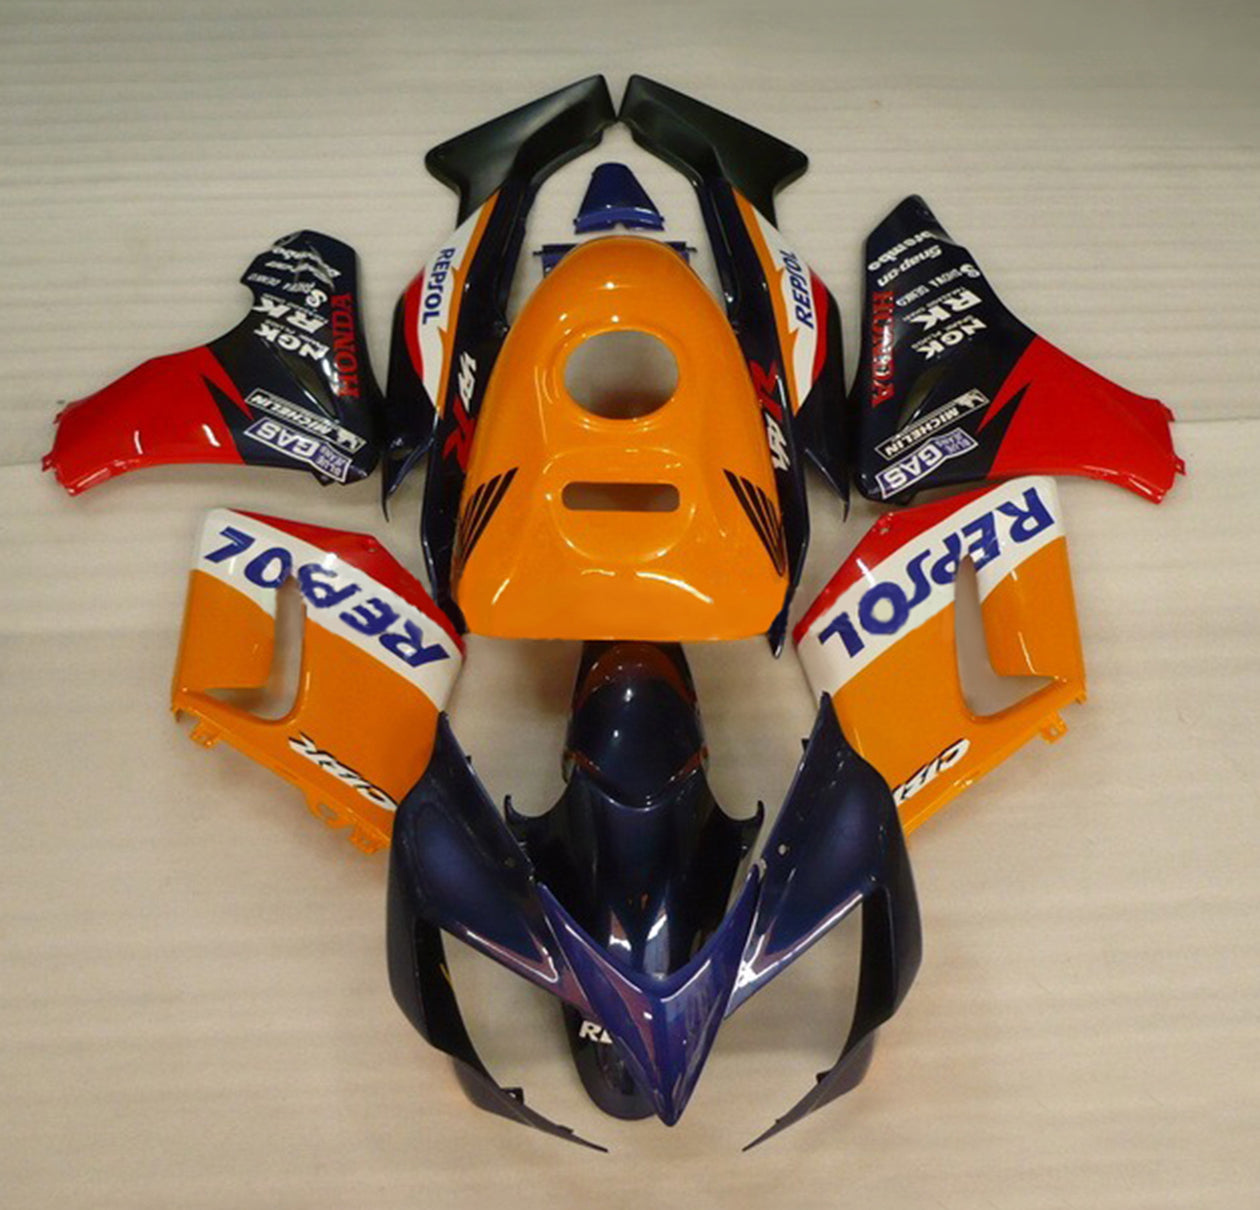 Kit de carenado Amotopart 2002-2006 Honda CBR125R